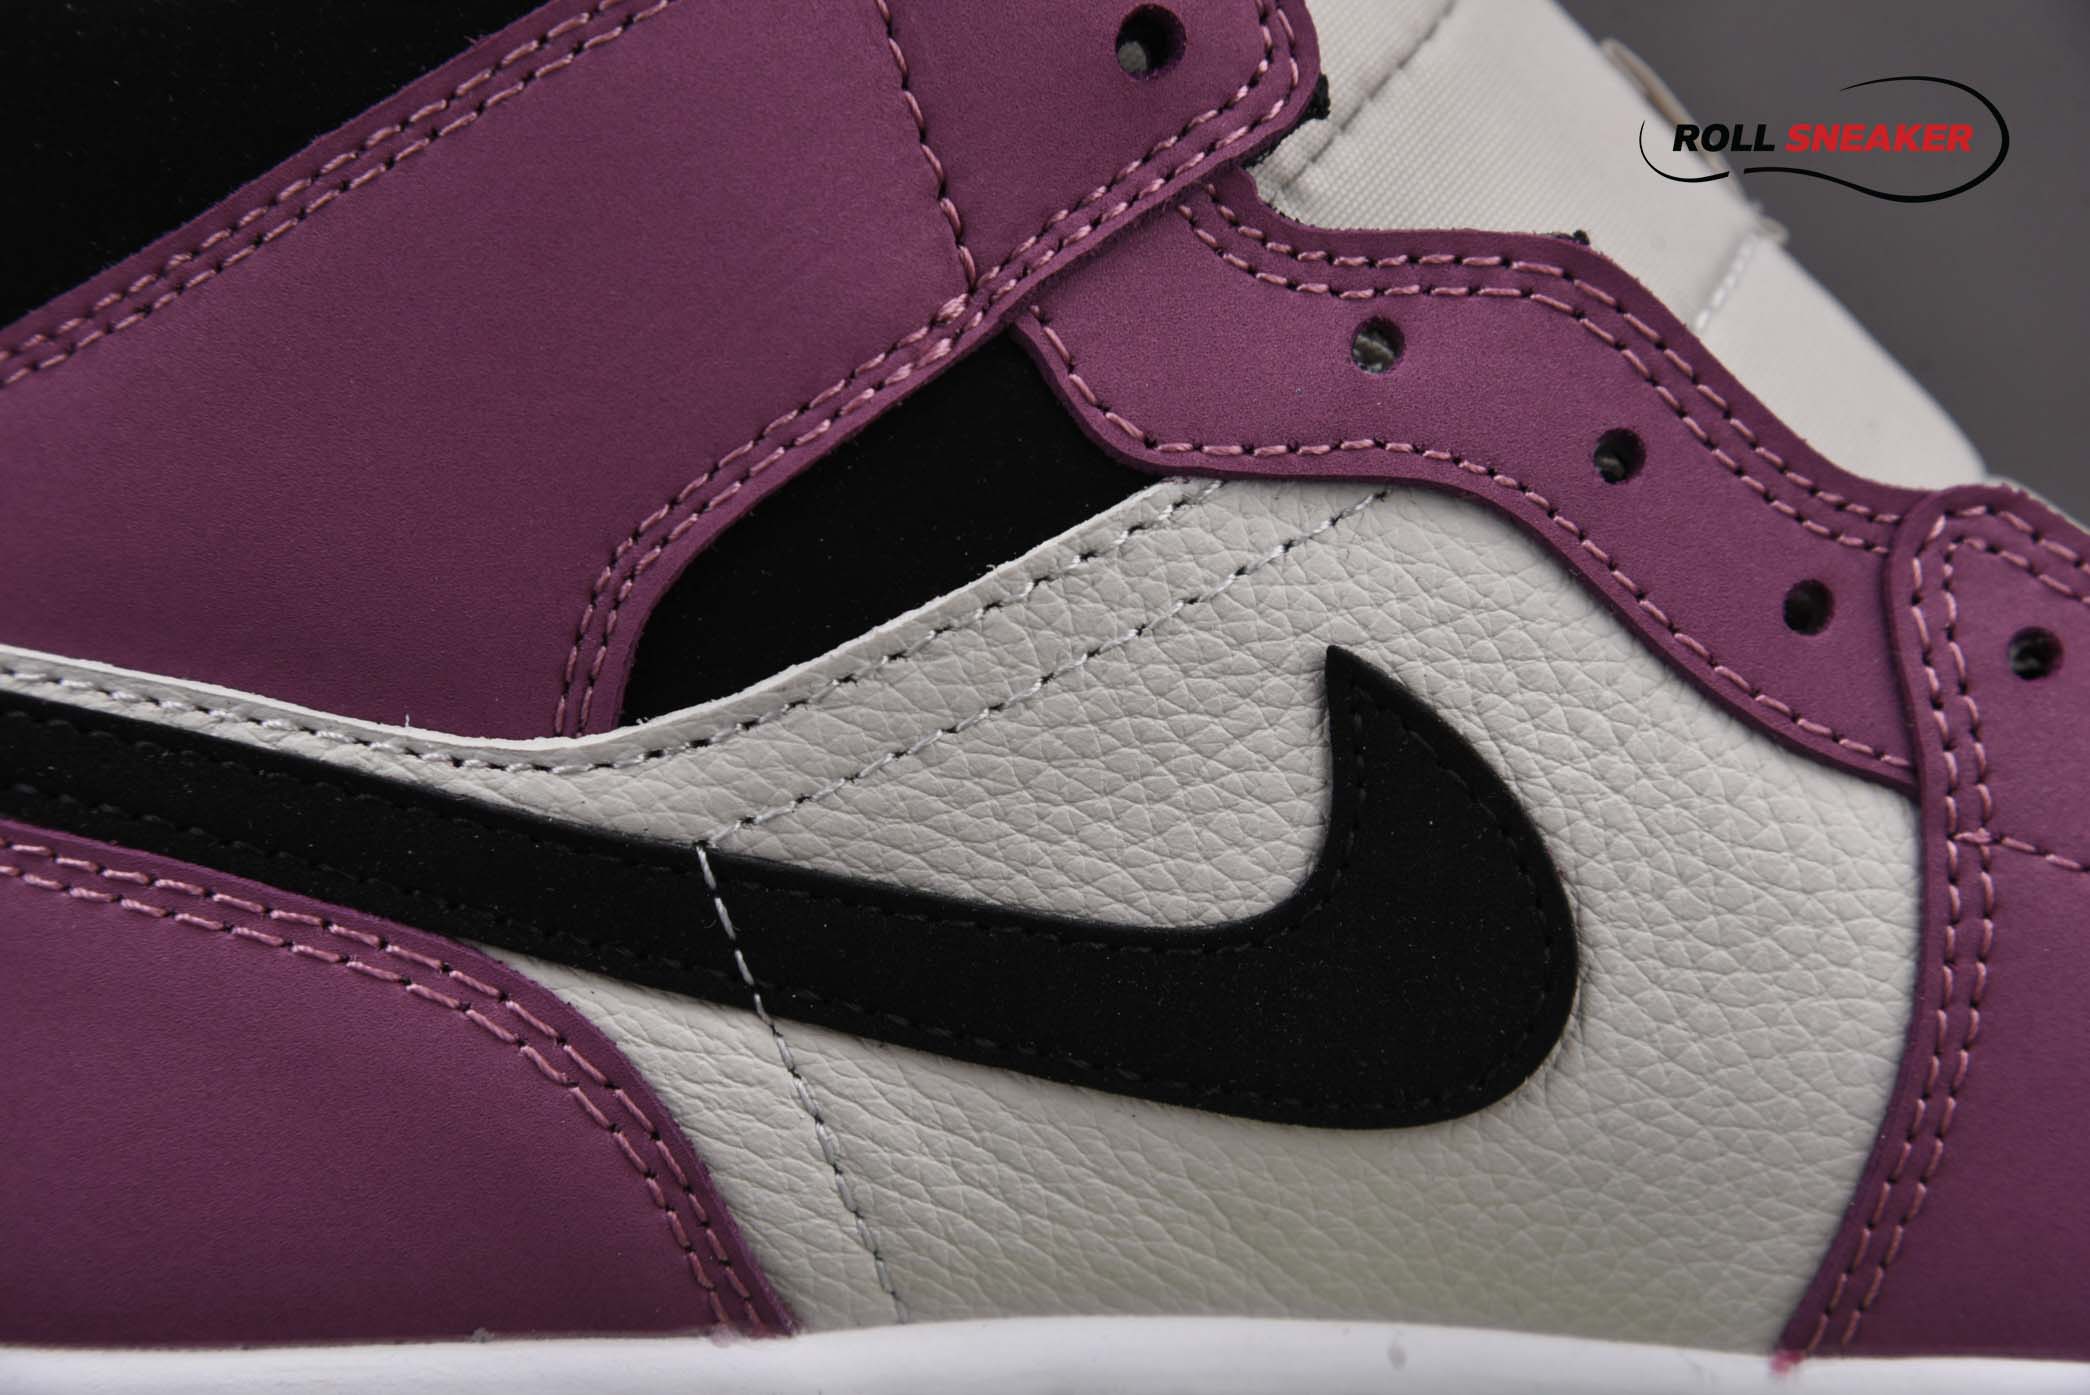 Nike Air Jordan 1 Mid Appears in Berry Pink